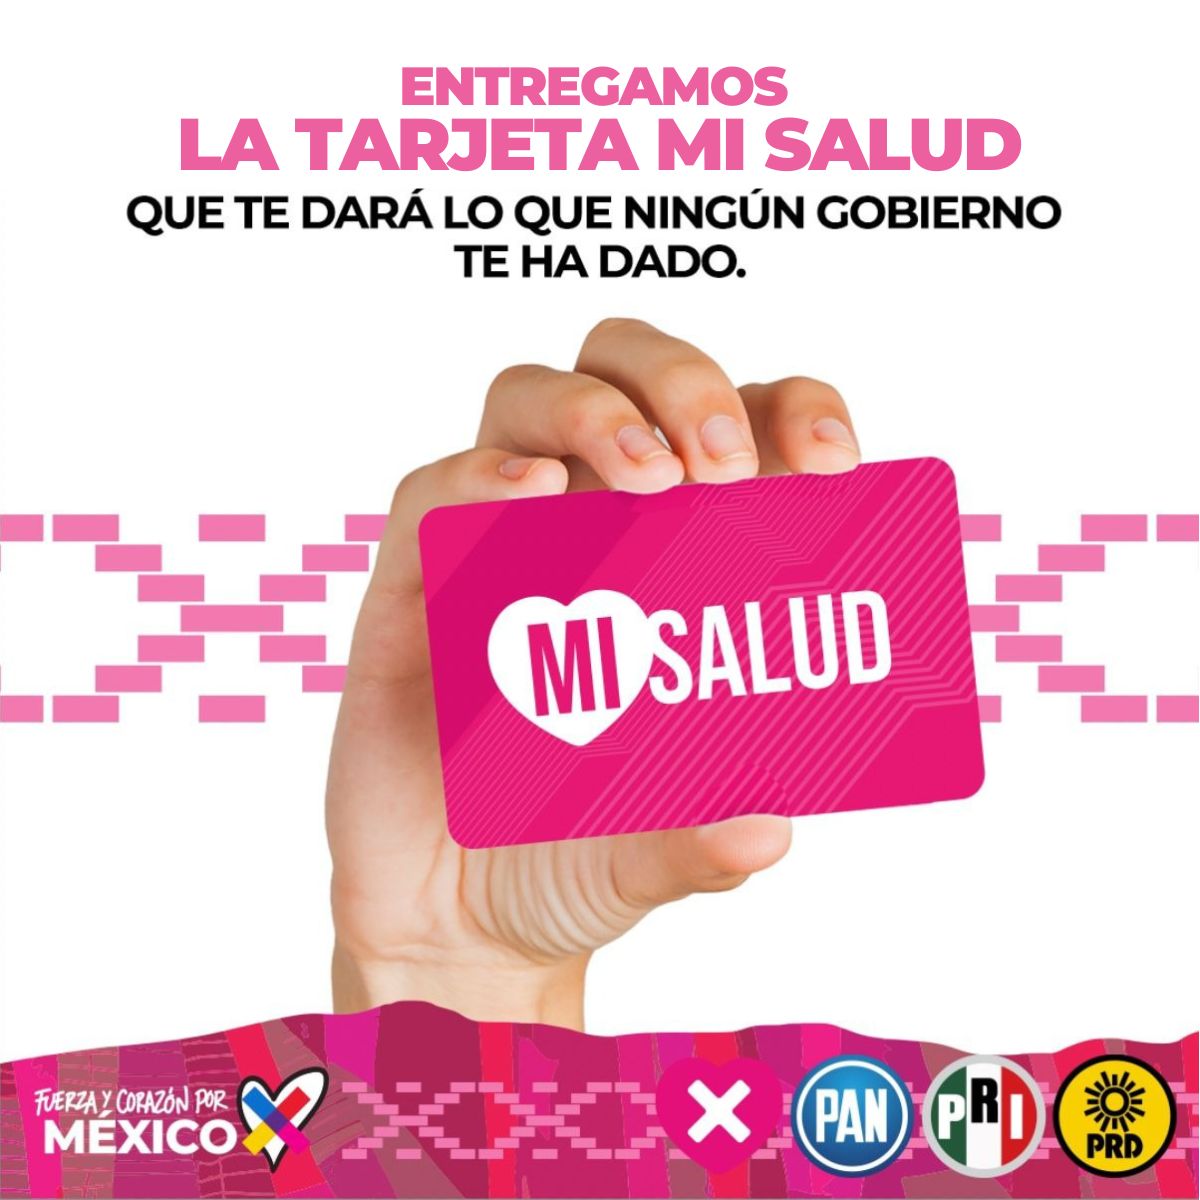 Que alegría, todos los mexicanos por fin tendremos acceso a la salud 
#TarjetaMiSalud 
#DebateConX